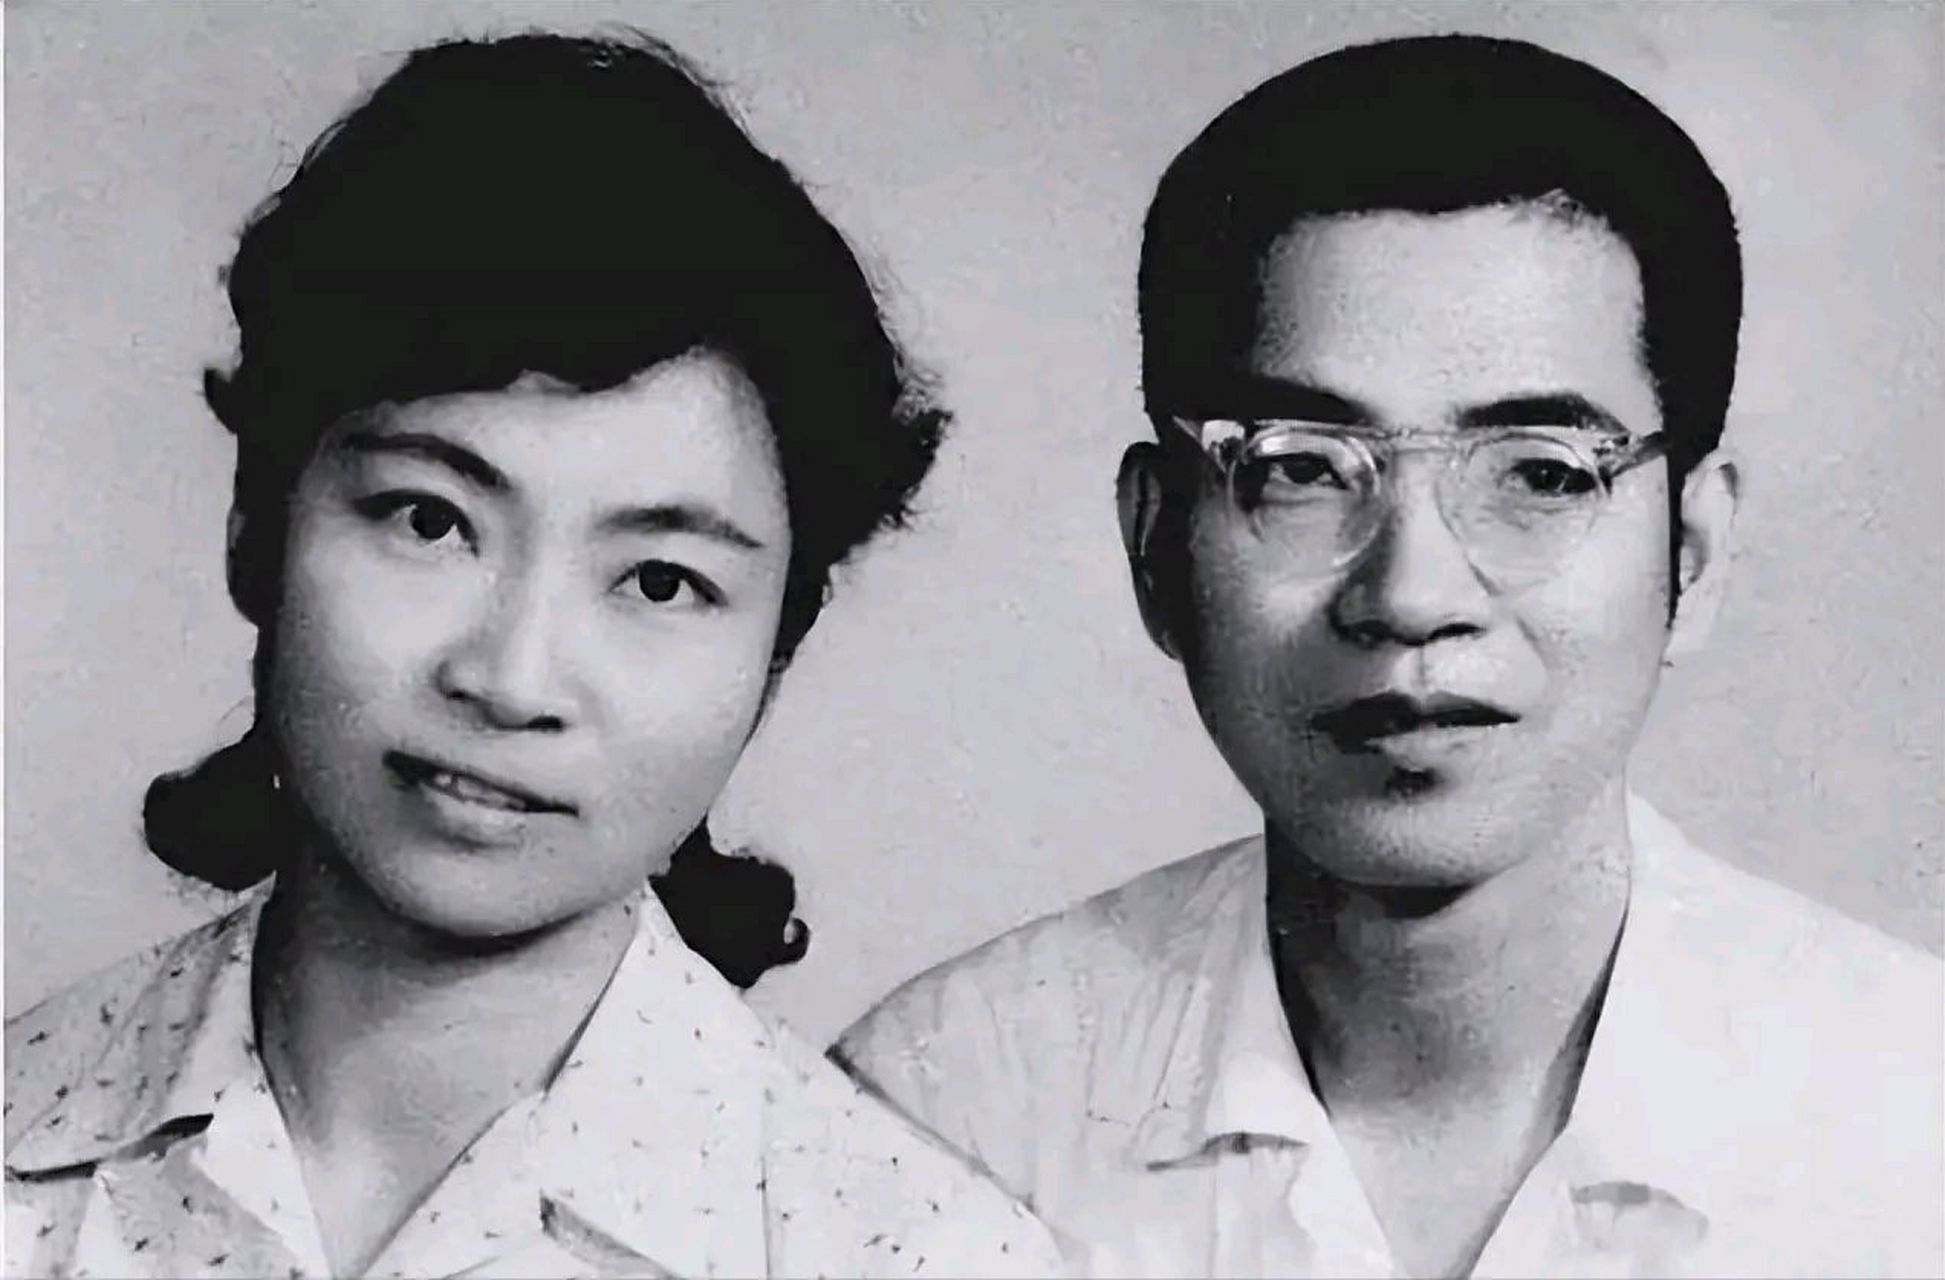 1980年,数学奇才陈景润icon,娶了29岁女军医由昆icon